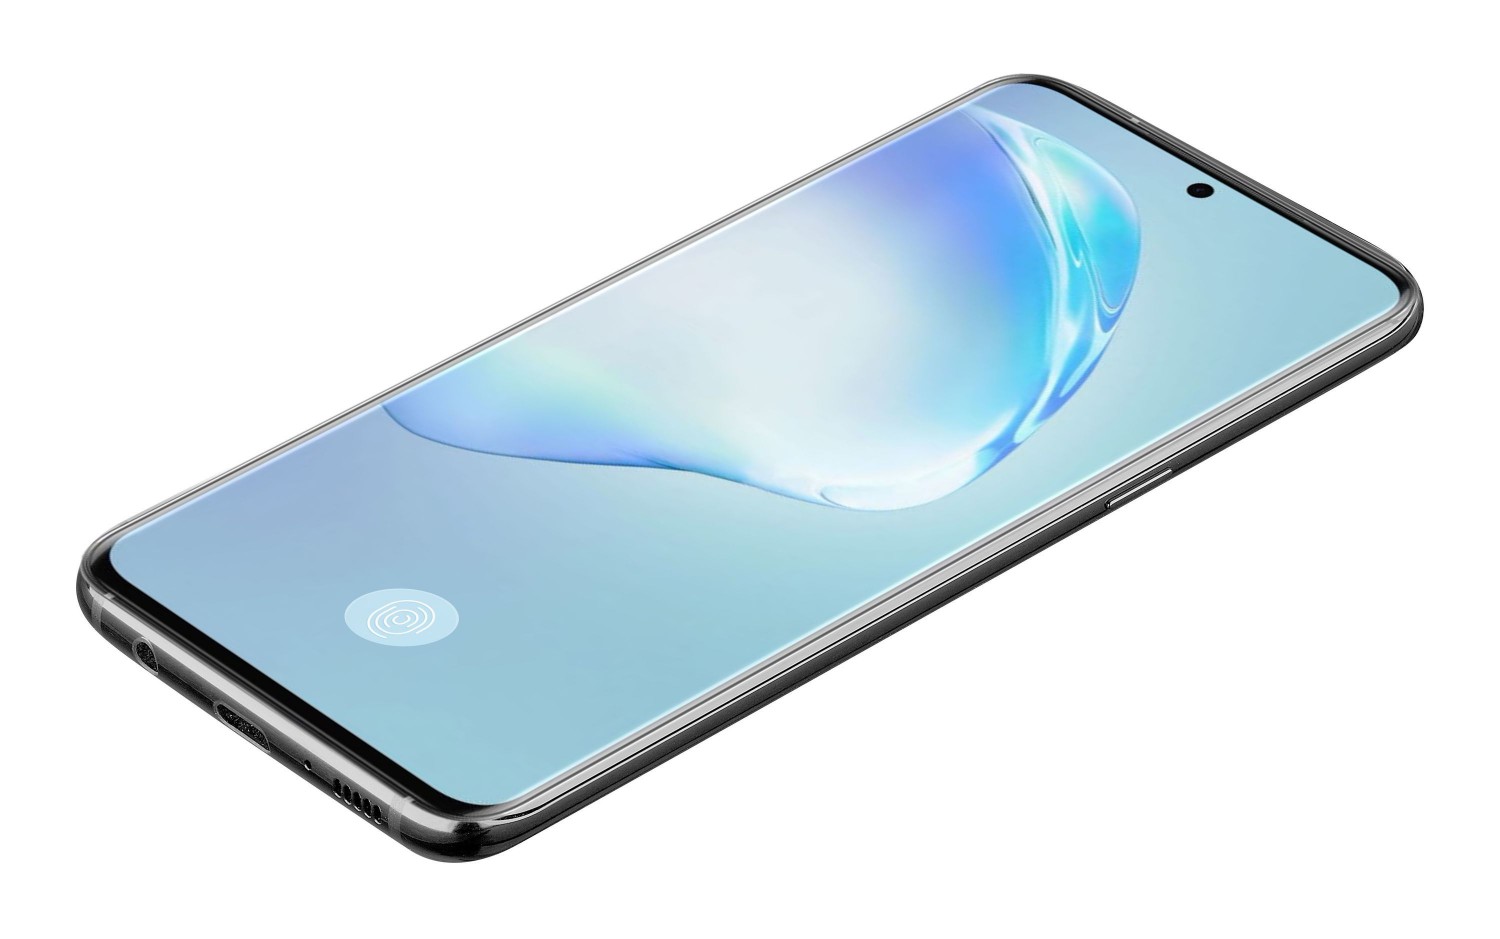 Ochranné tvrzené sklo pro Cellularline Glass pro Samsung Galaxy S20+, černá